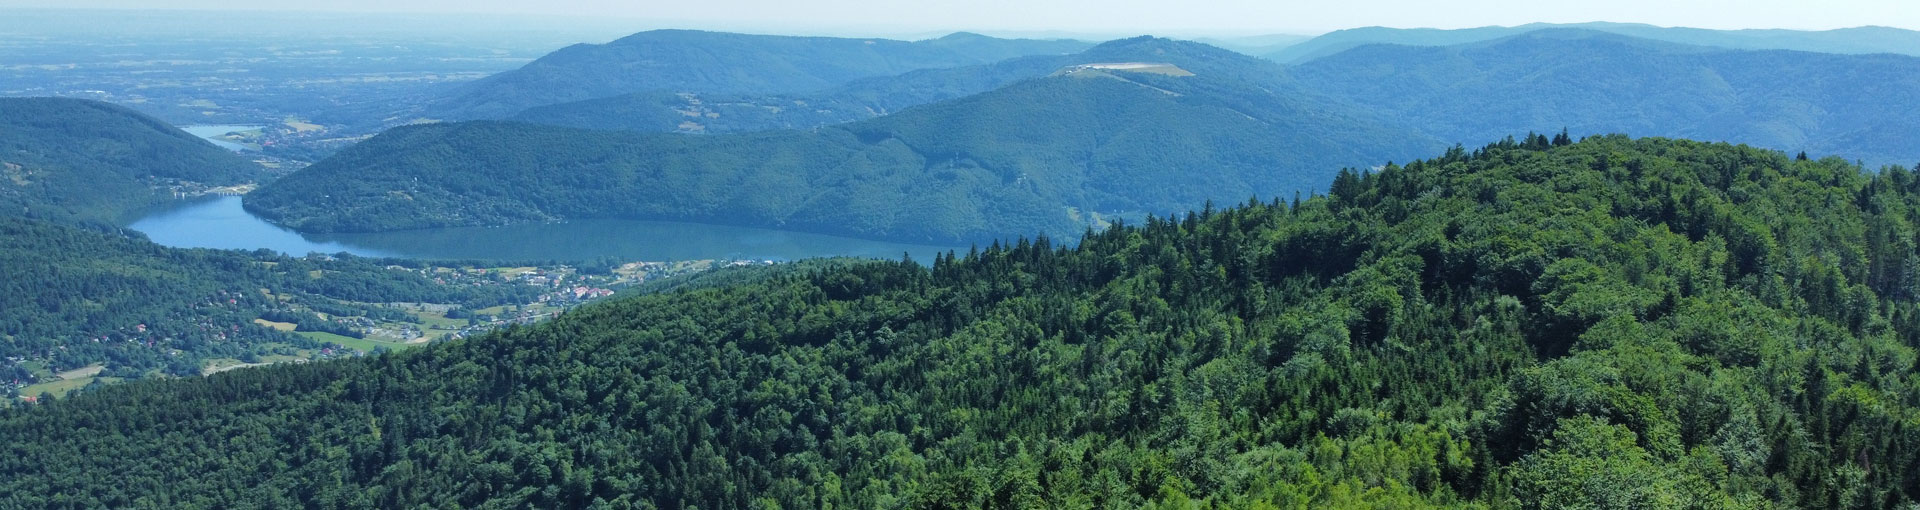 Zdjęcie dronem jeziora i podbeskidzkich gór